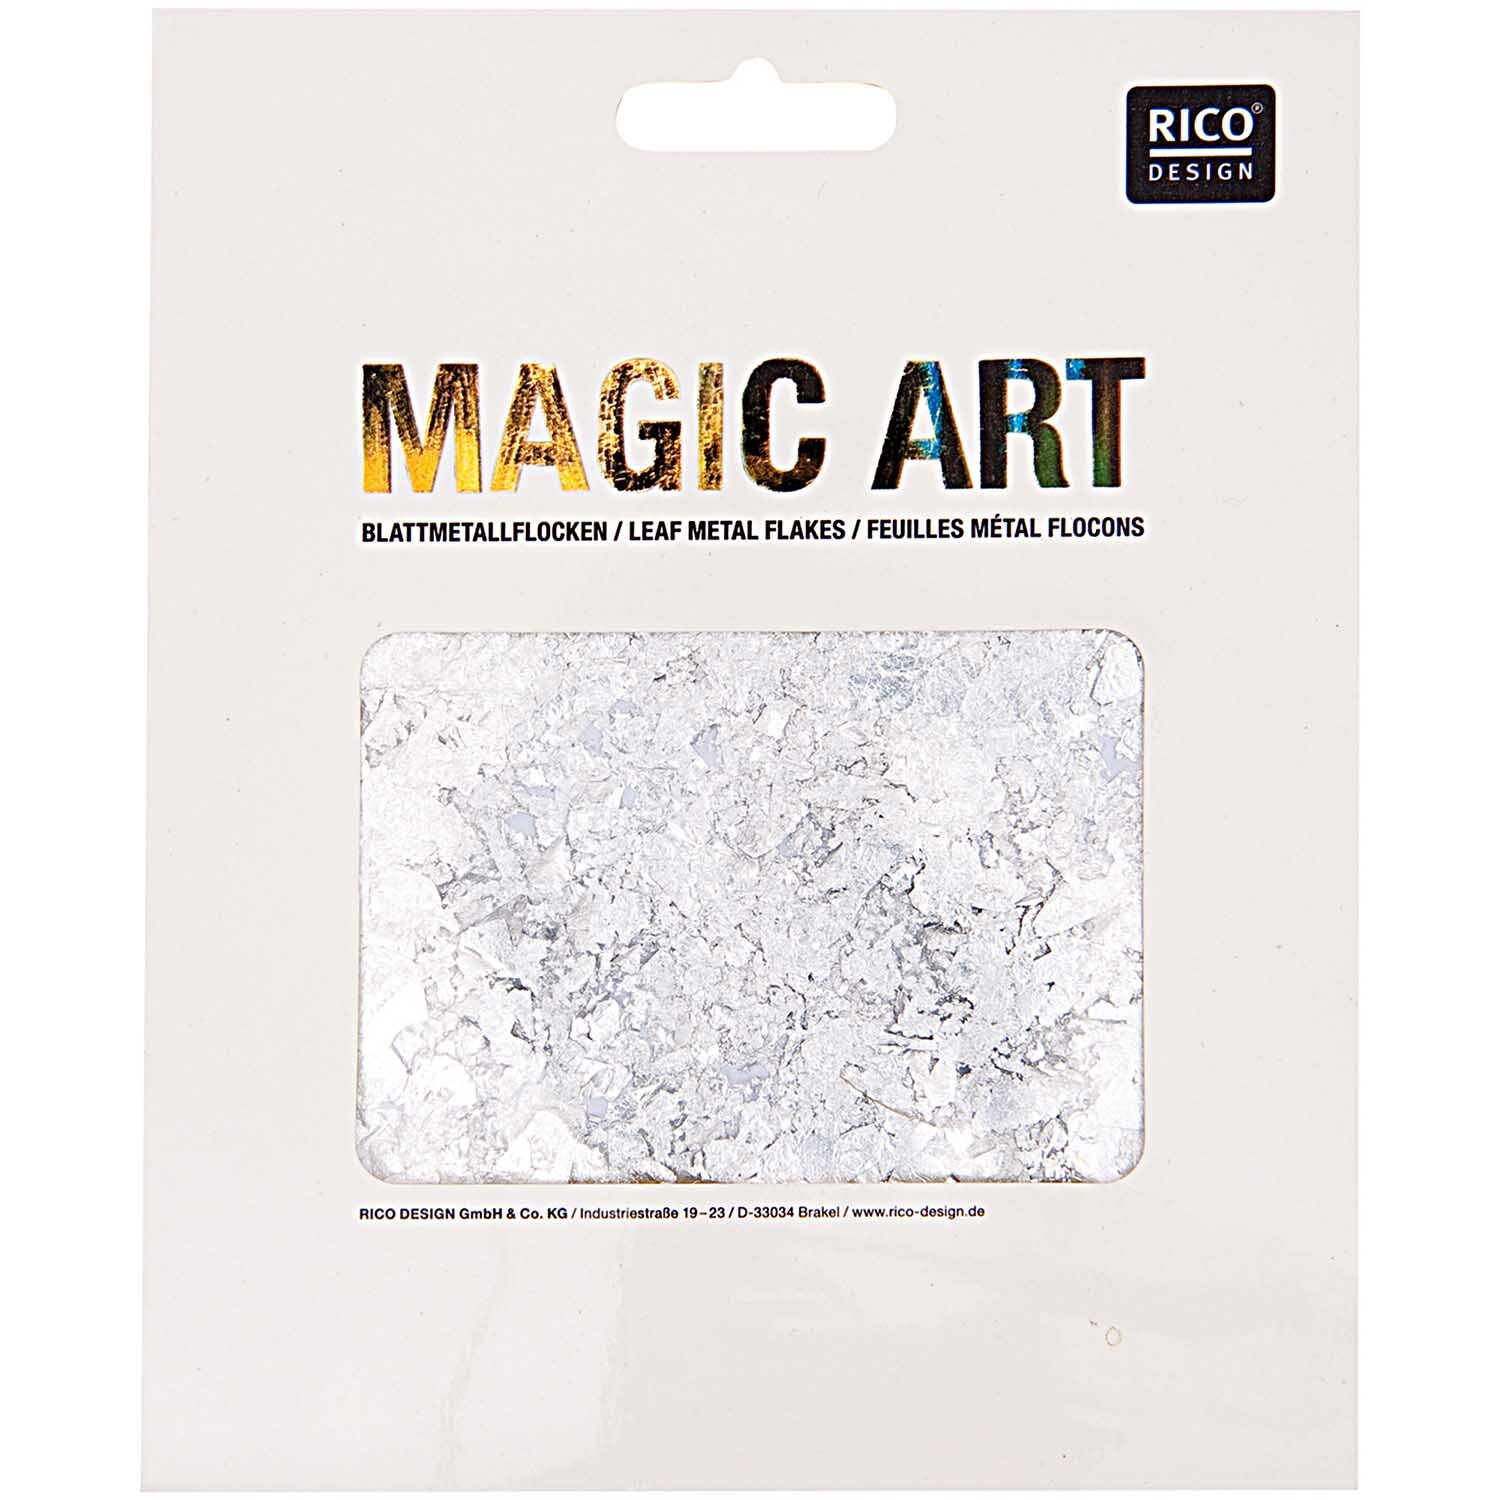 Magic Art Blattmetall-Flocken